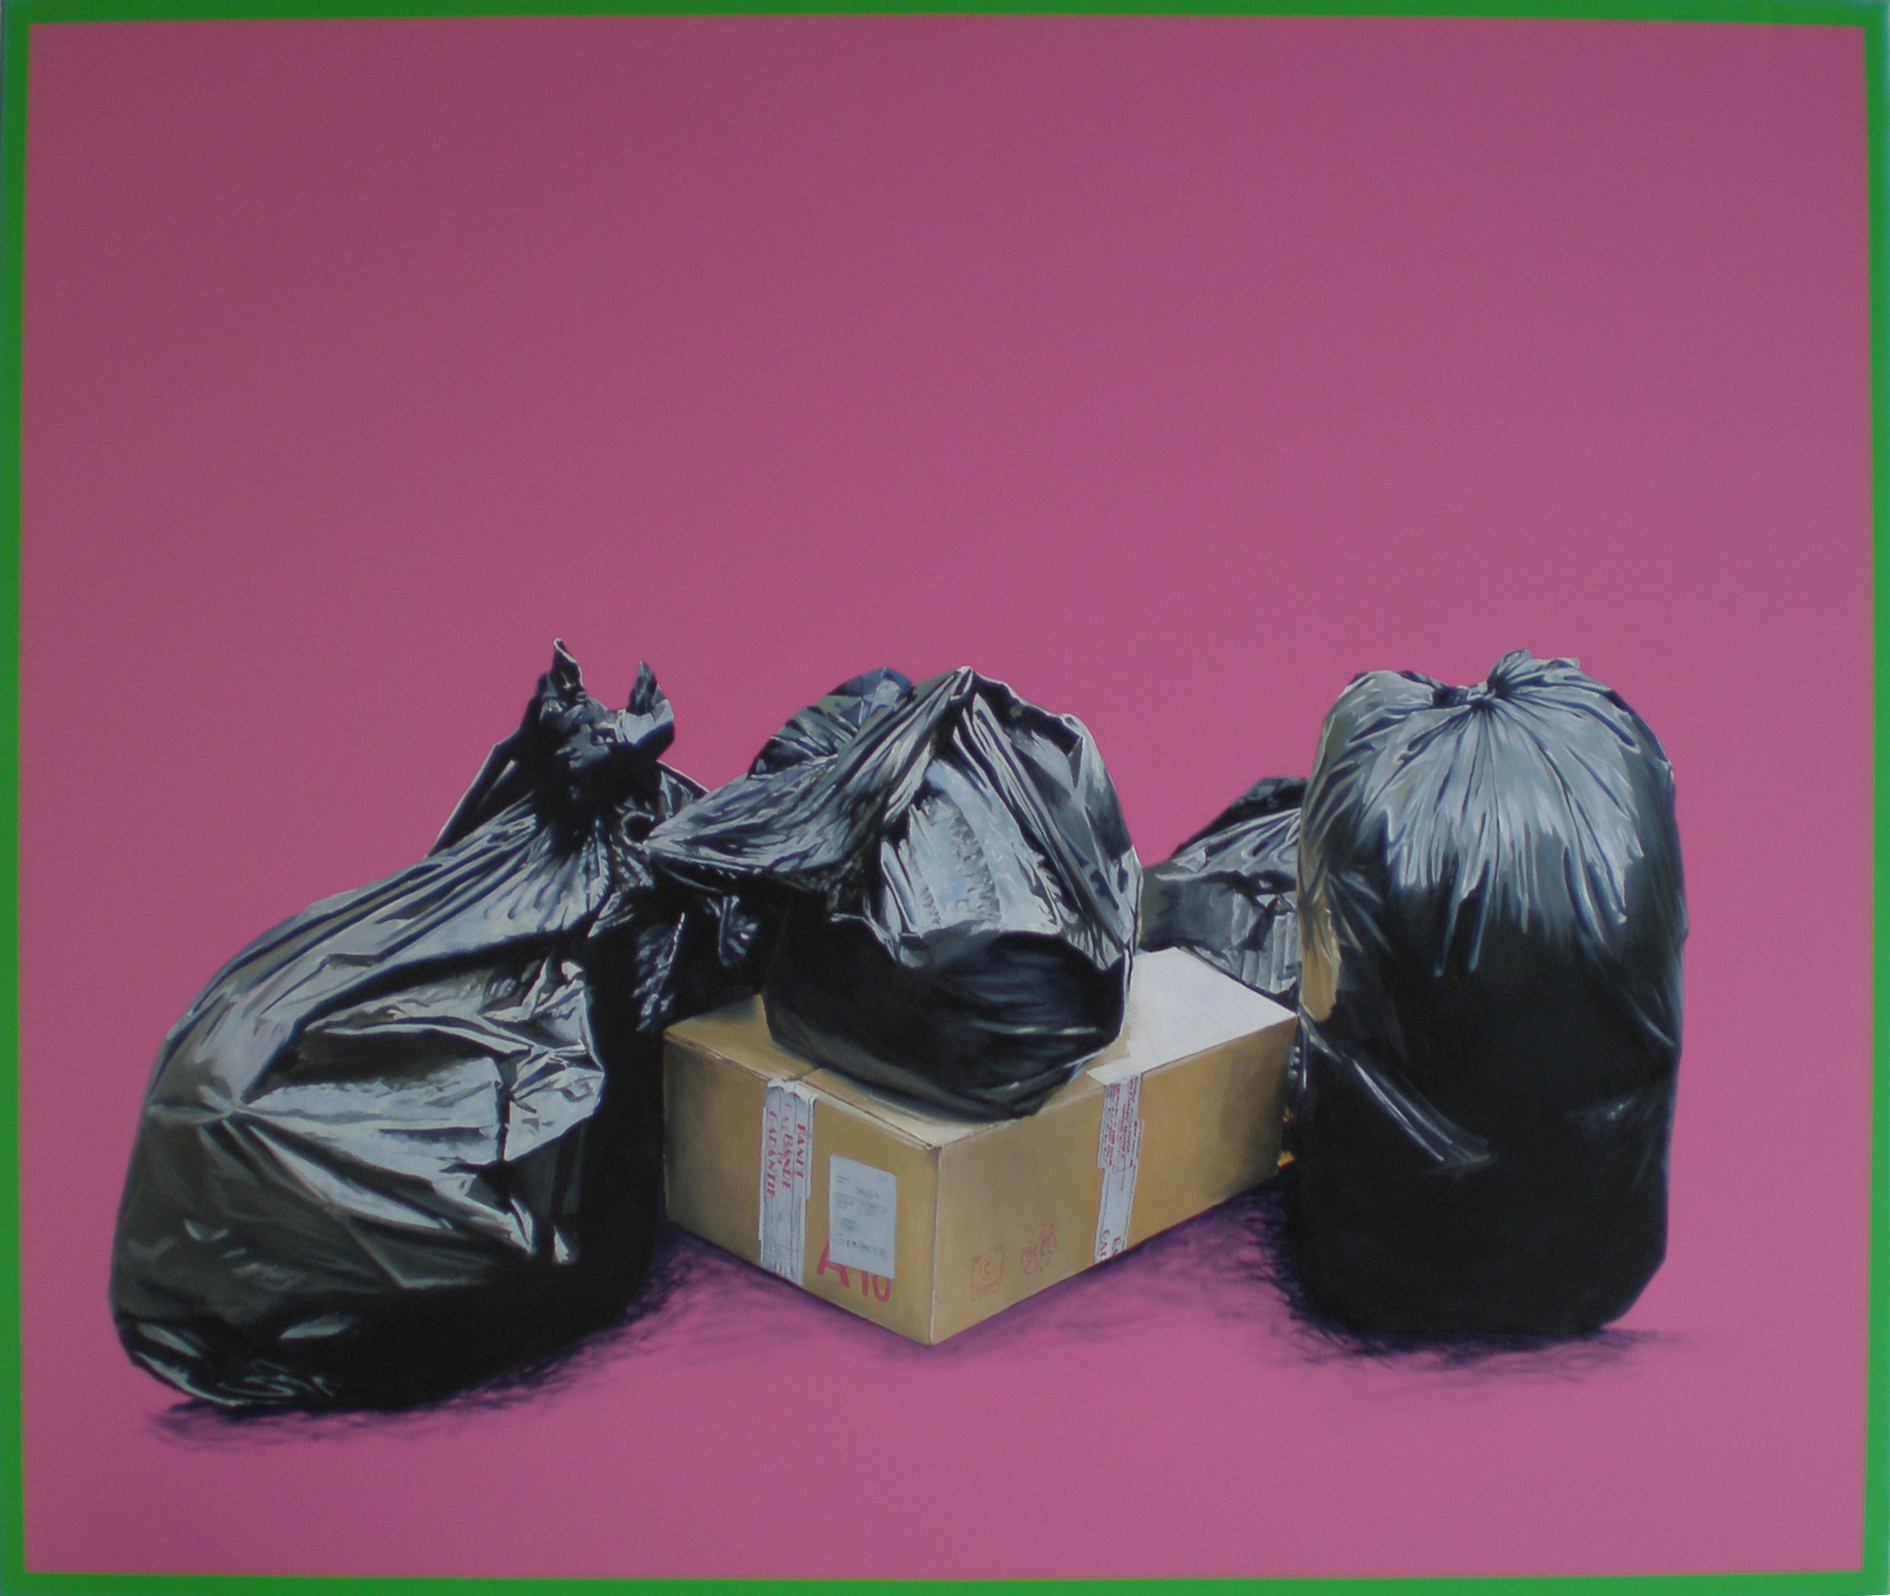  Série " Les sacs poubelle " Rose (2008) 130 x 162 cm huile sur toile, fond acrylique 